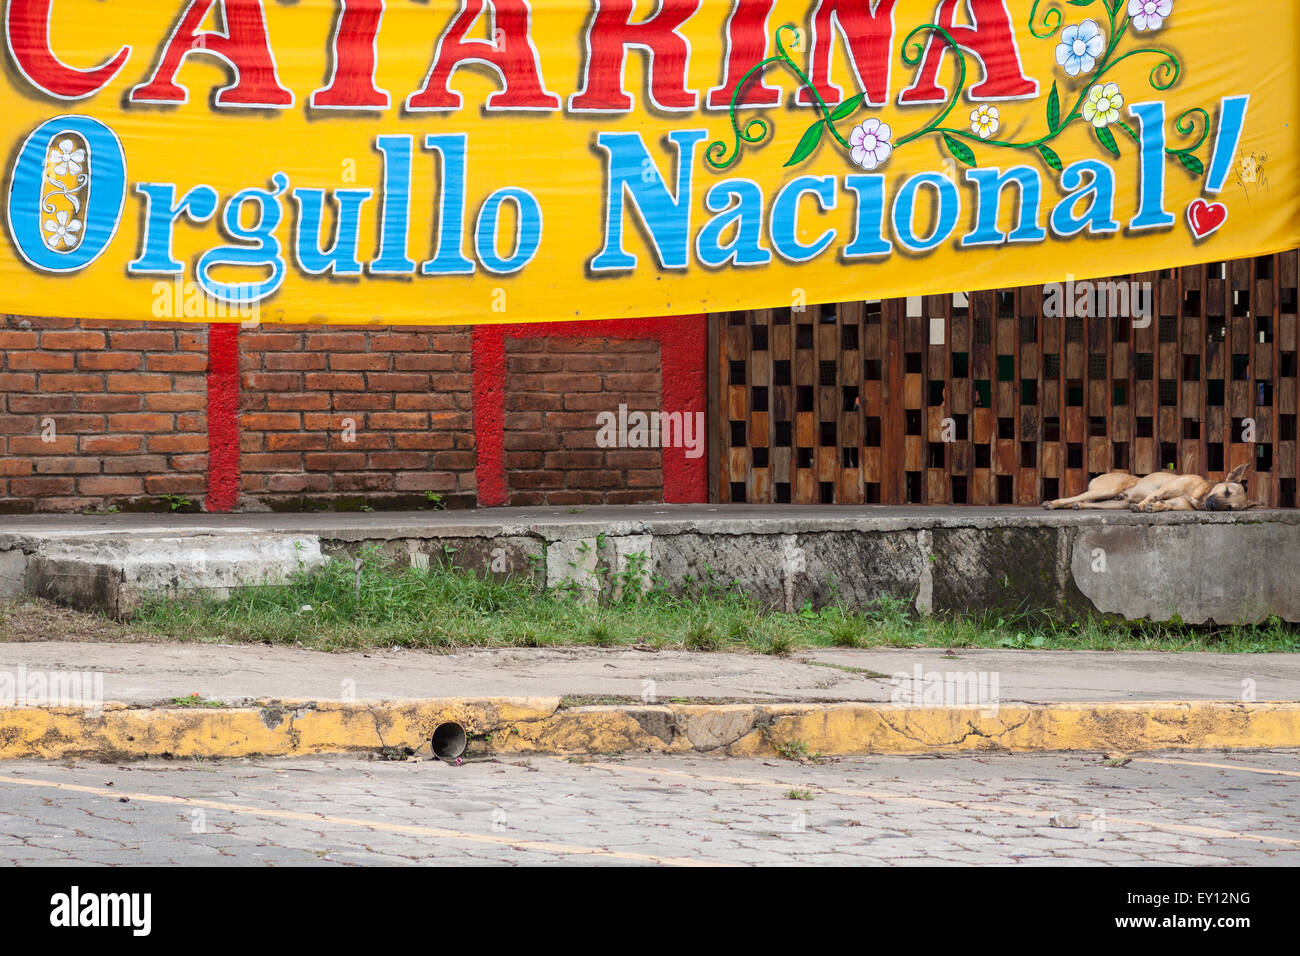 Straßenhund schlafen unter Catarina Nationalstolz Banner, Nicaragua Stockfoto